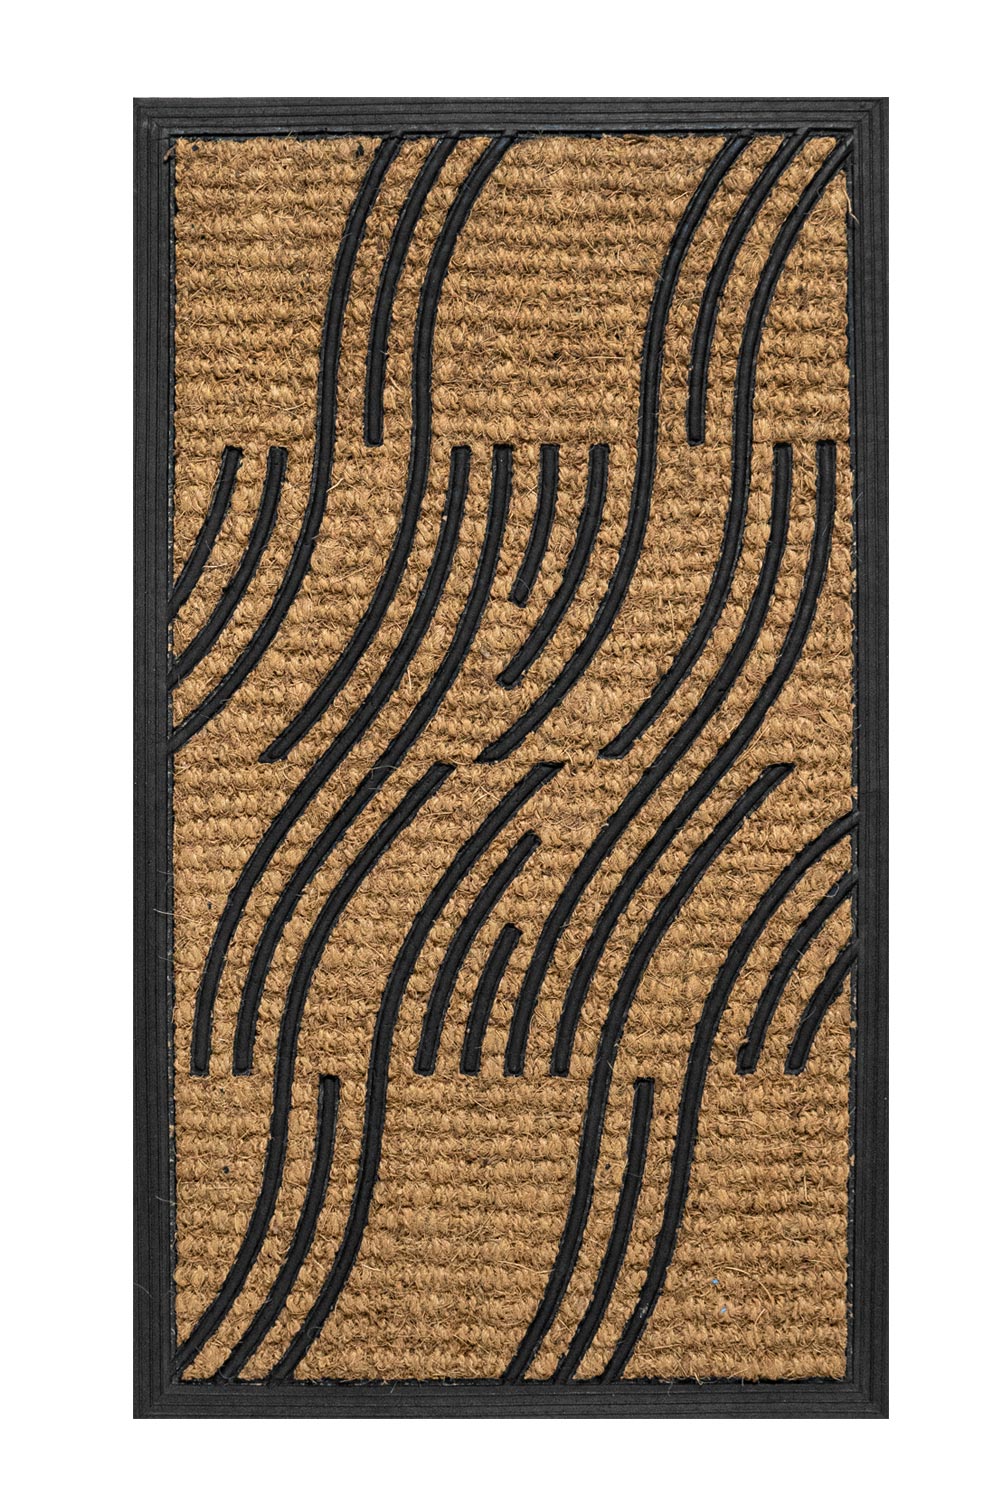 Kokosovo-gumová rohožka - vlnky 40x70 cm